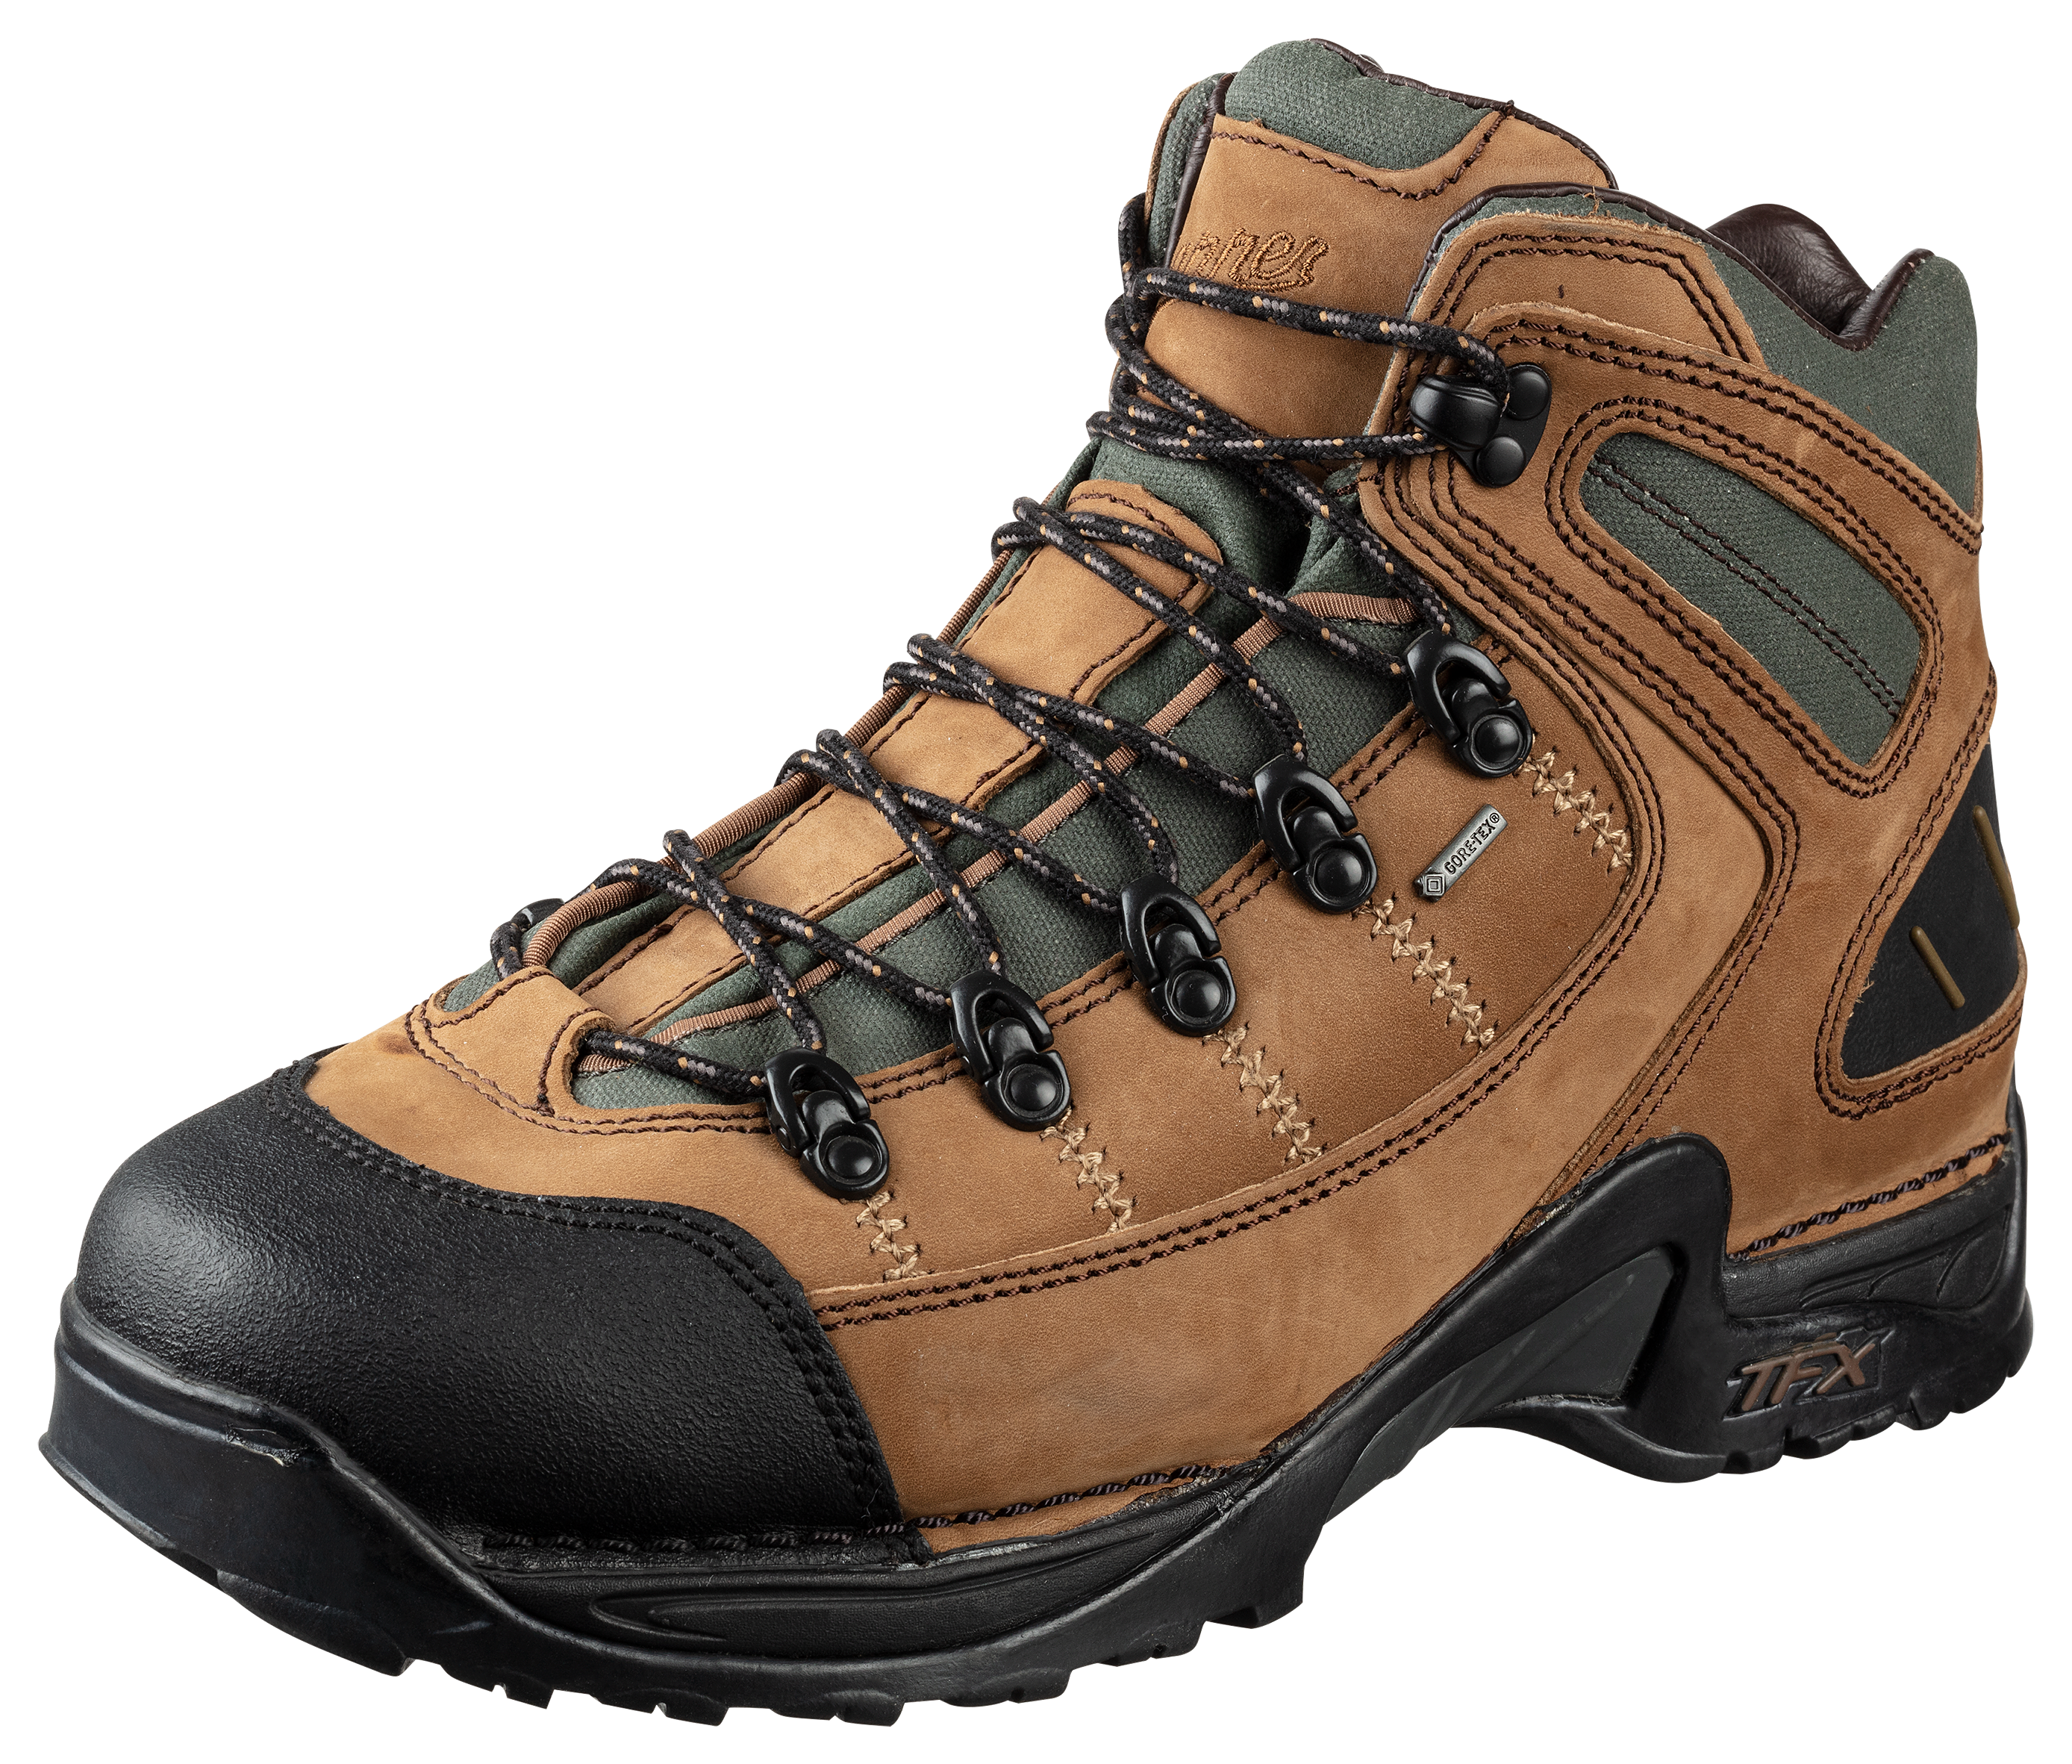 Danner 453 GORE-TEX Waterproof Hiking Boots for Men - Dark Tan - 12W